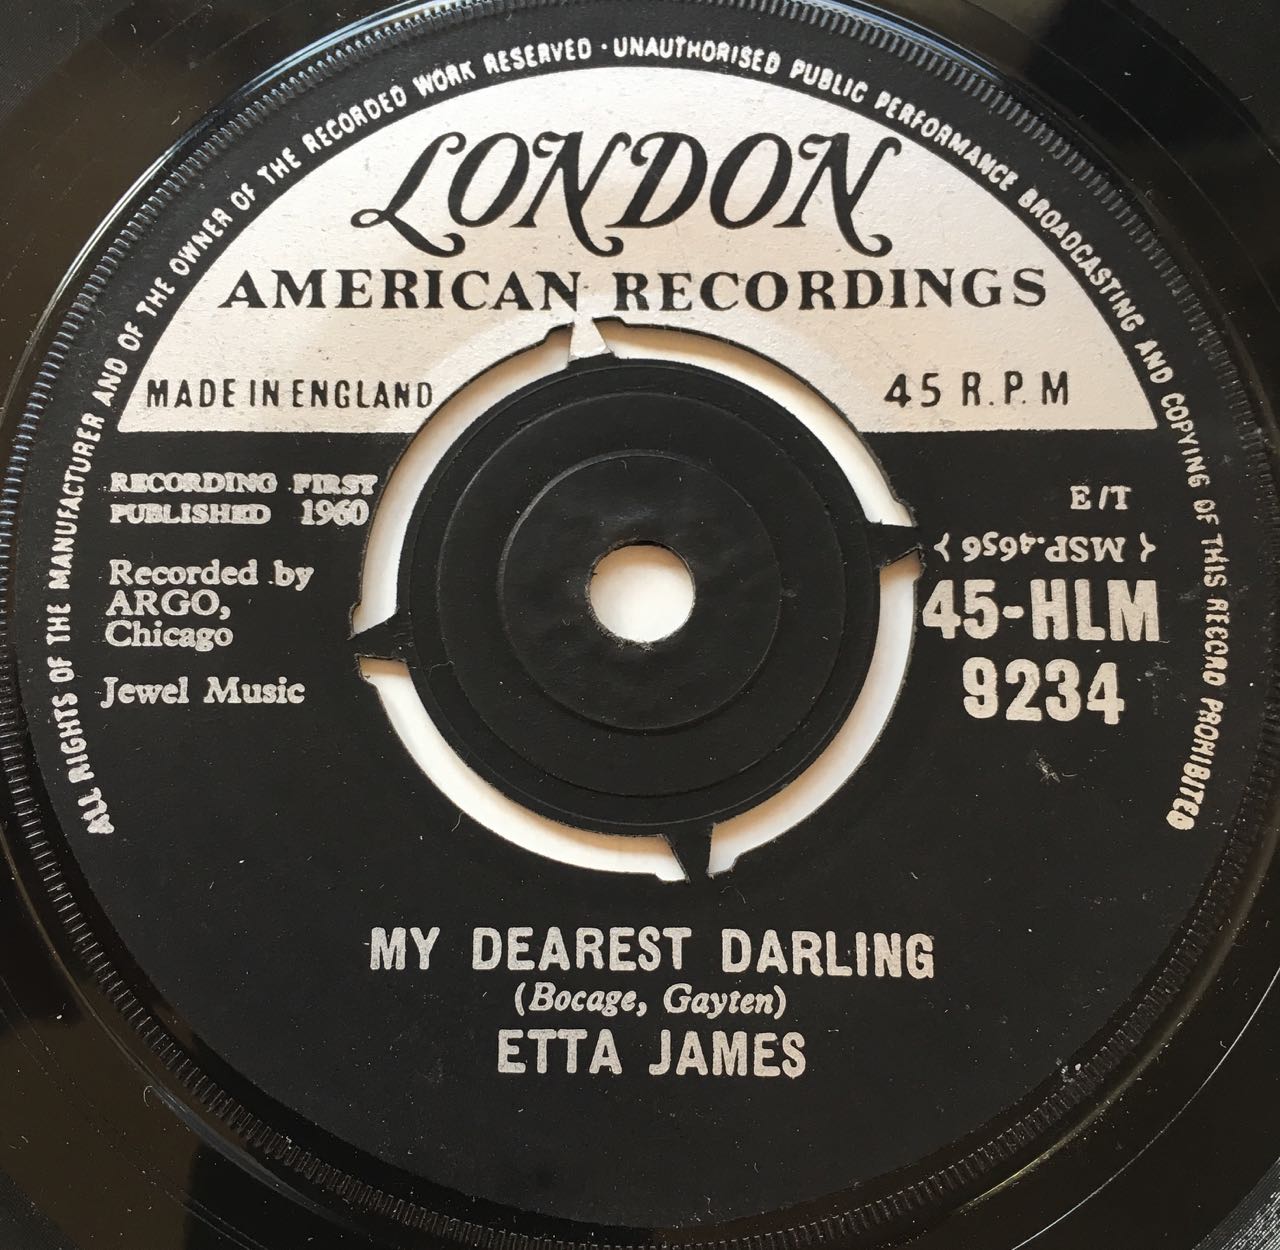 ETTA JAMES - MY DEAREST DARLING - LONDON 45-HLM 9234 (1960) | LOST ...